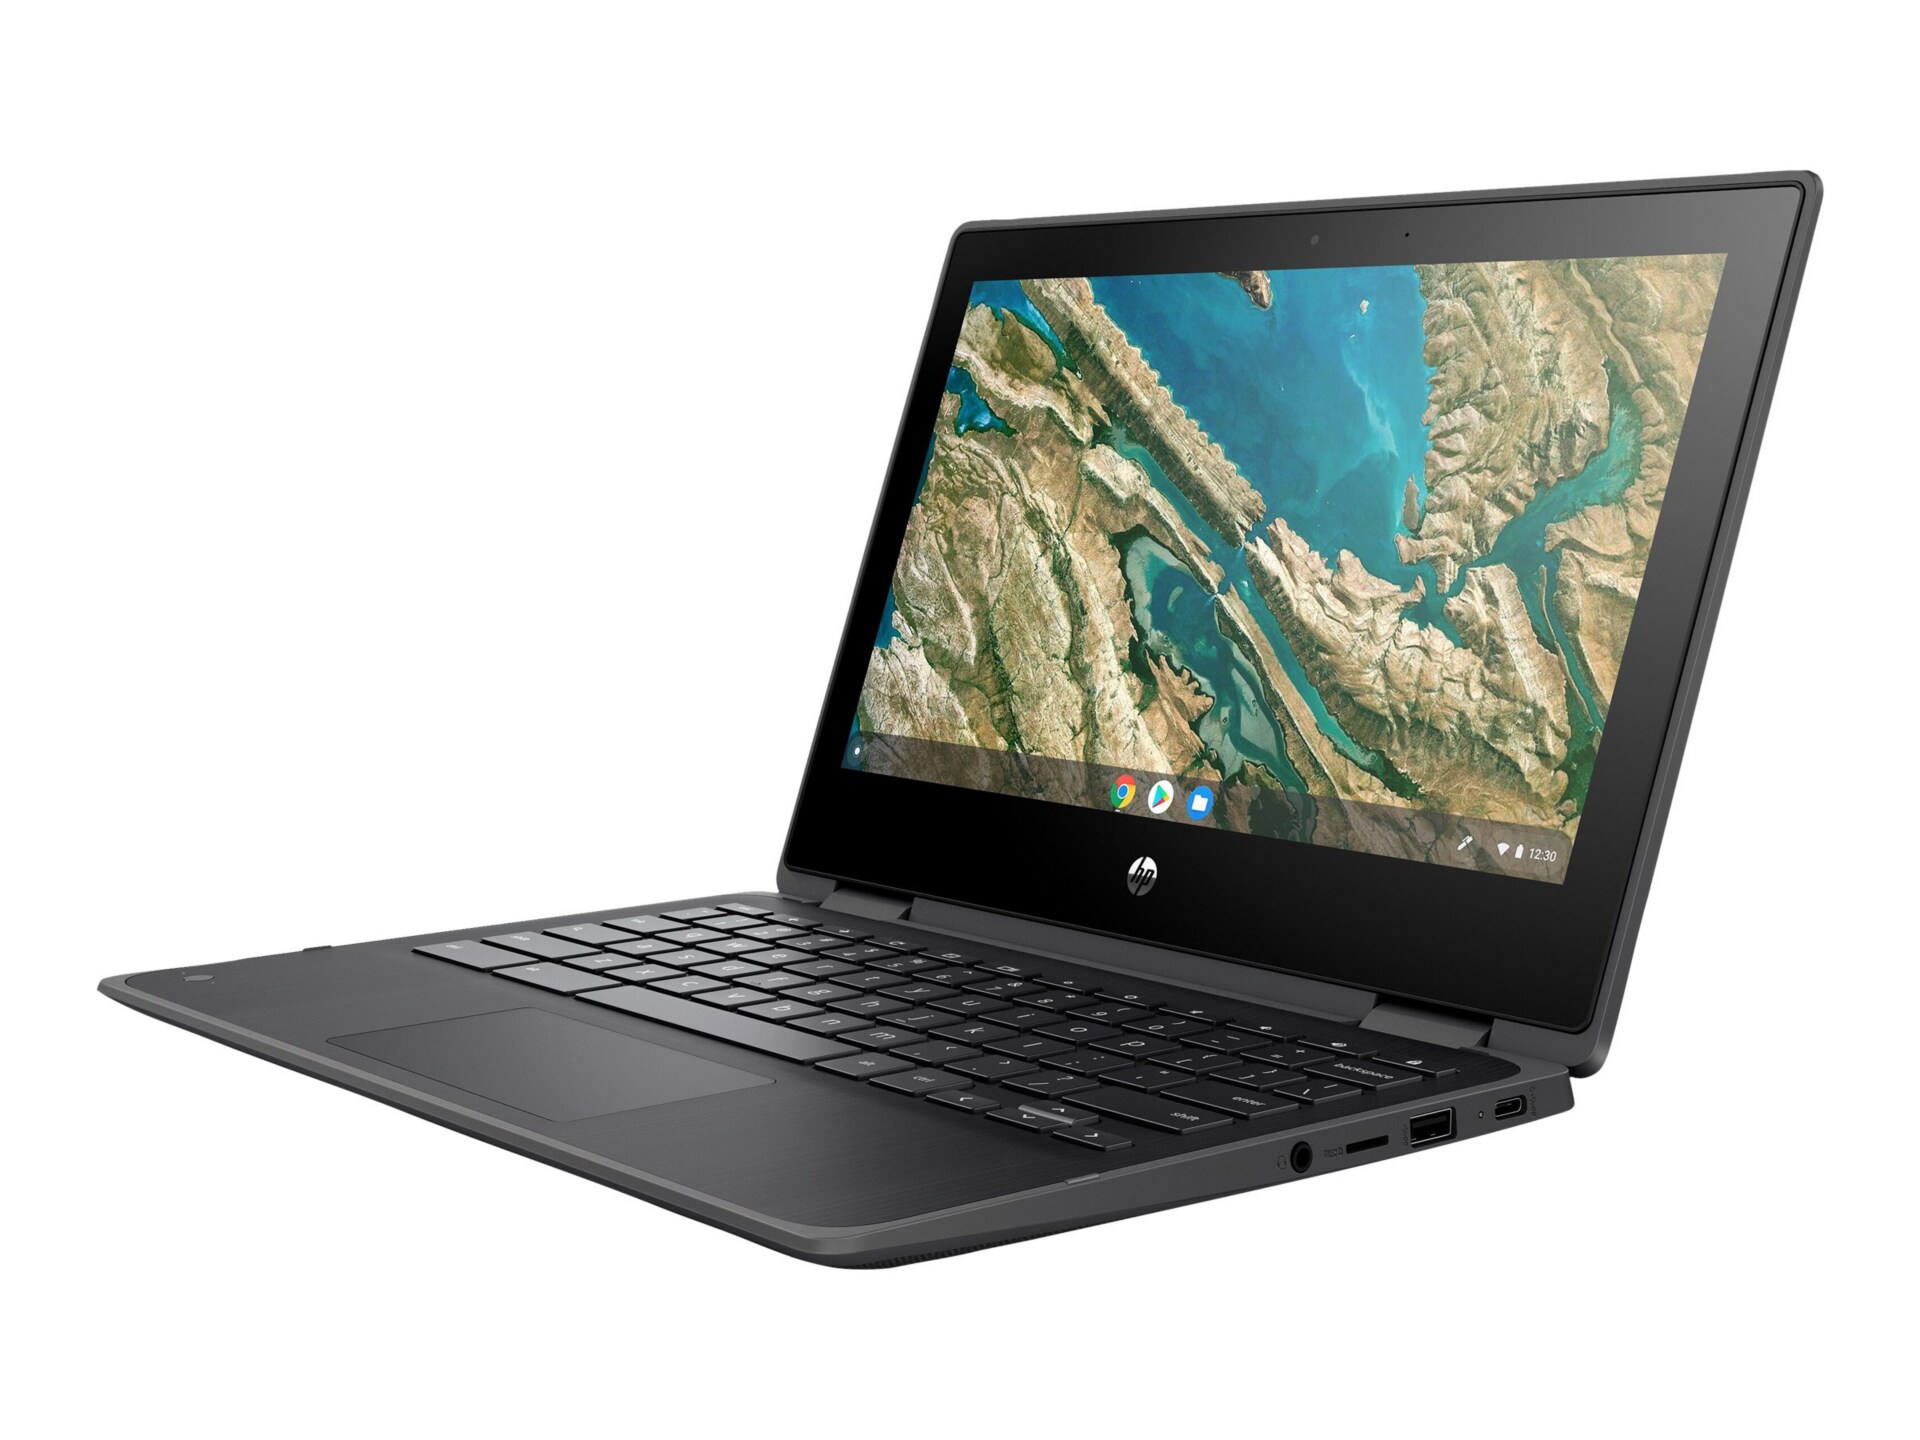 HP Chromebook x360 11 G3 Education Edition - 11.6" - Celeron N4020 - 4 GB R